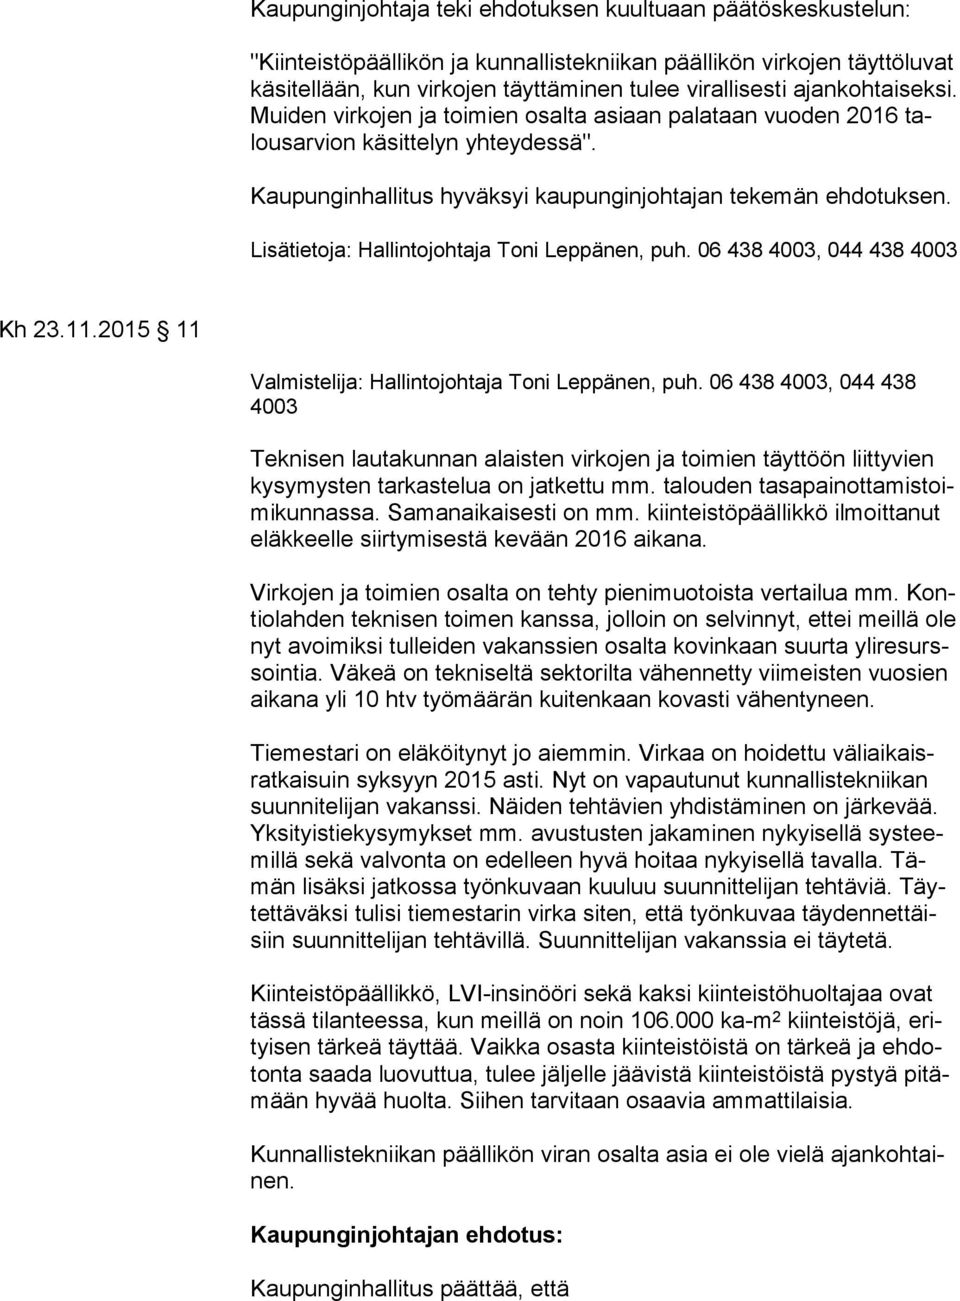 2015 11 Valmistelija: Hallintojohtaja Toni Leppänen, puh. 06 438 4003, 044 438 4003 Teknisen lautakunnan alaisten virkojen ja toimien täyttöön liittyvien ky sy mys ten tarkastelua on jatkettu mm.